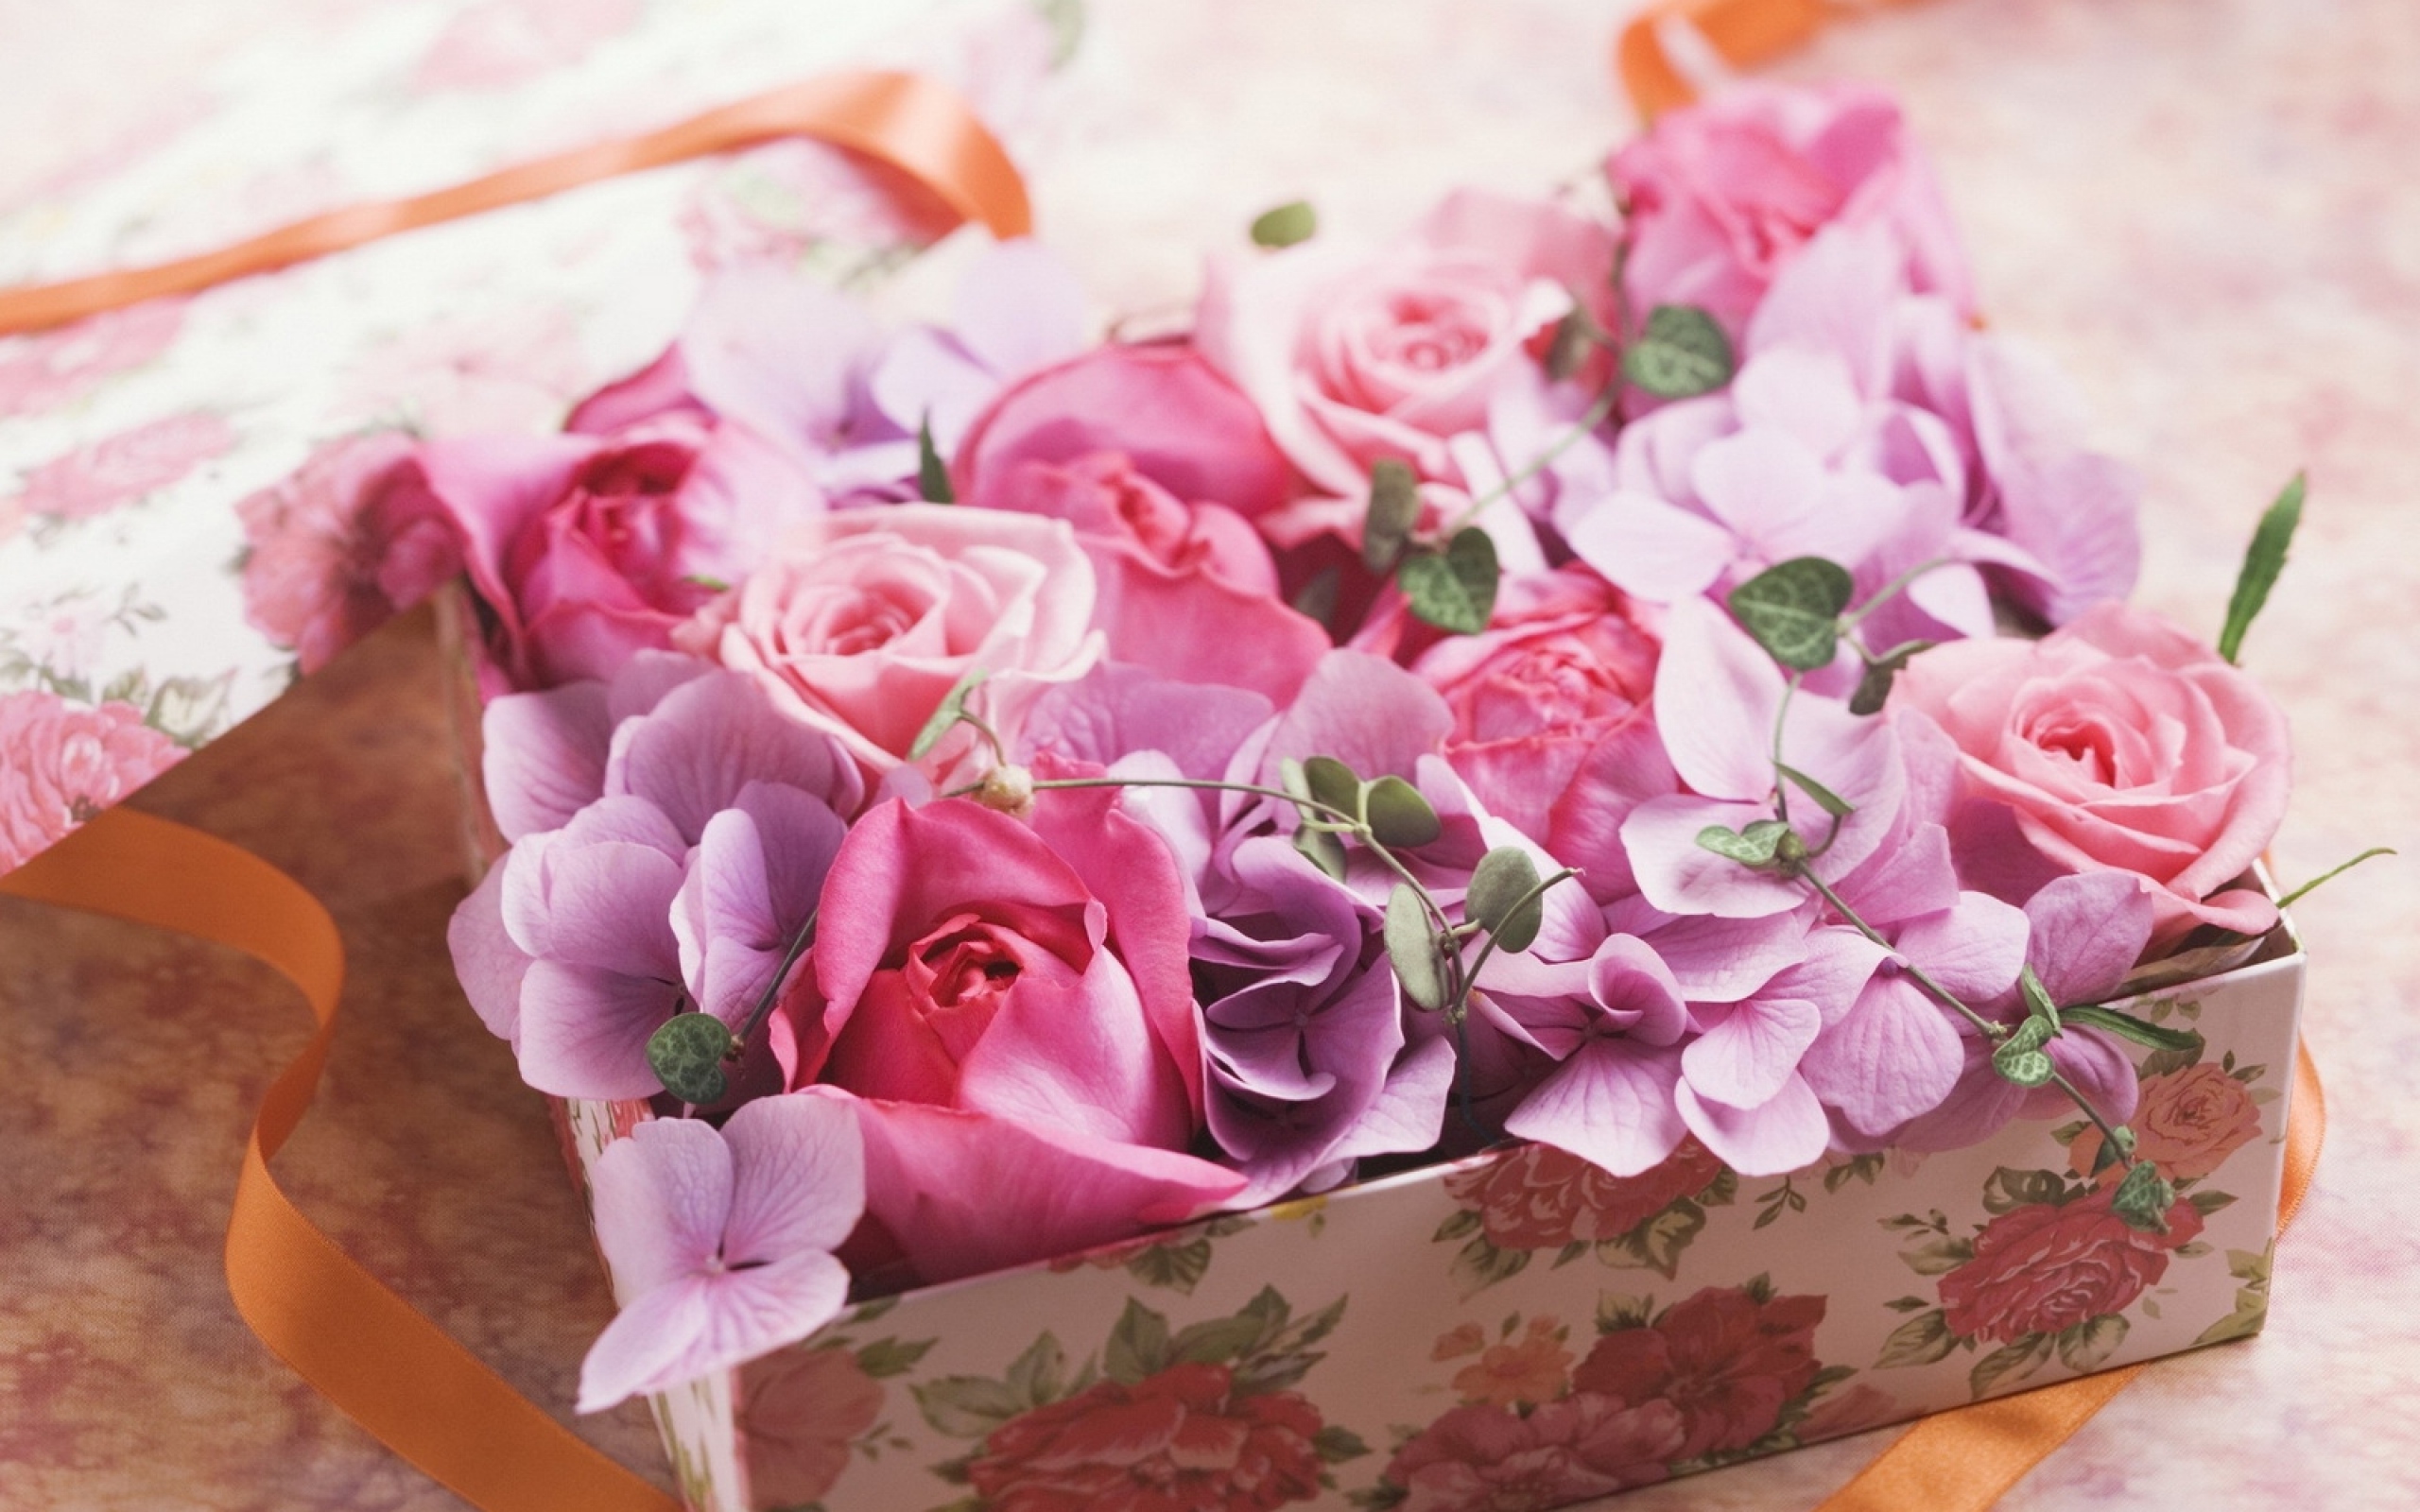 С днем рождения женщине нежно стильно. Цветы в подарок. Стильные цветы с днем рождения. Цветы нежные букеты. Стильные букеты на день рождения.